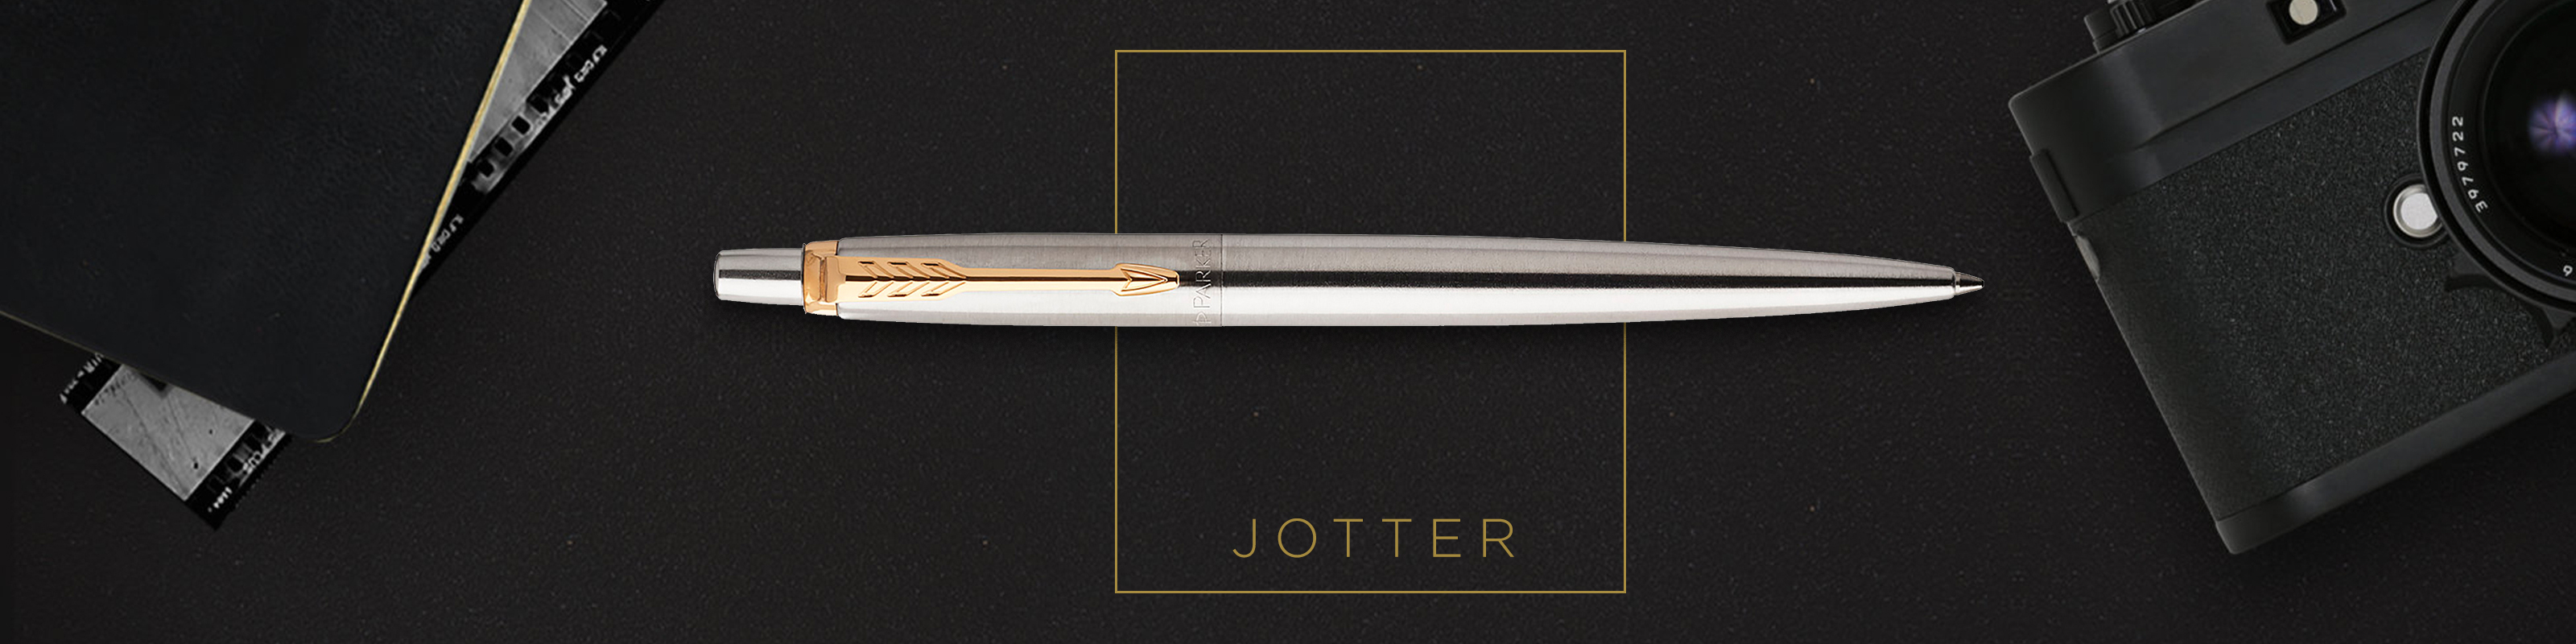 Parker Jotter - Pencil - Pencil 5.6mm